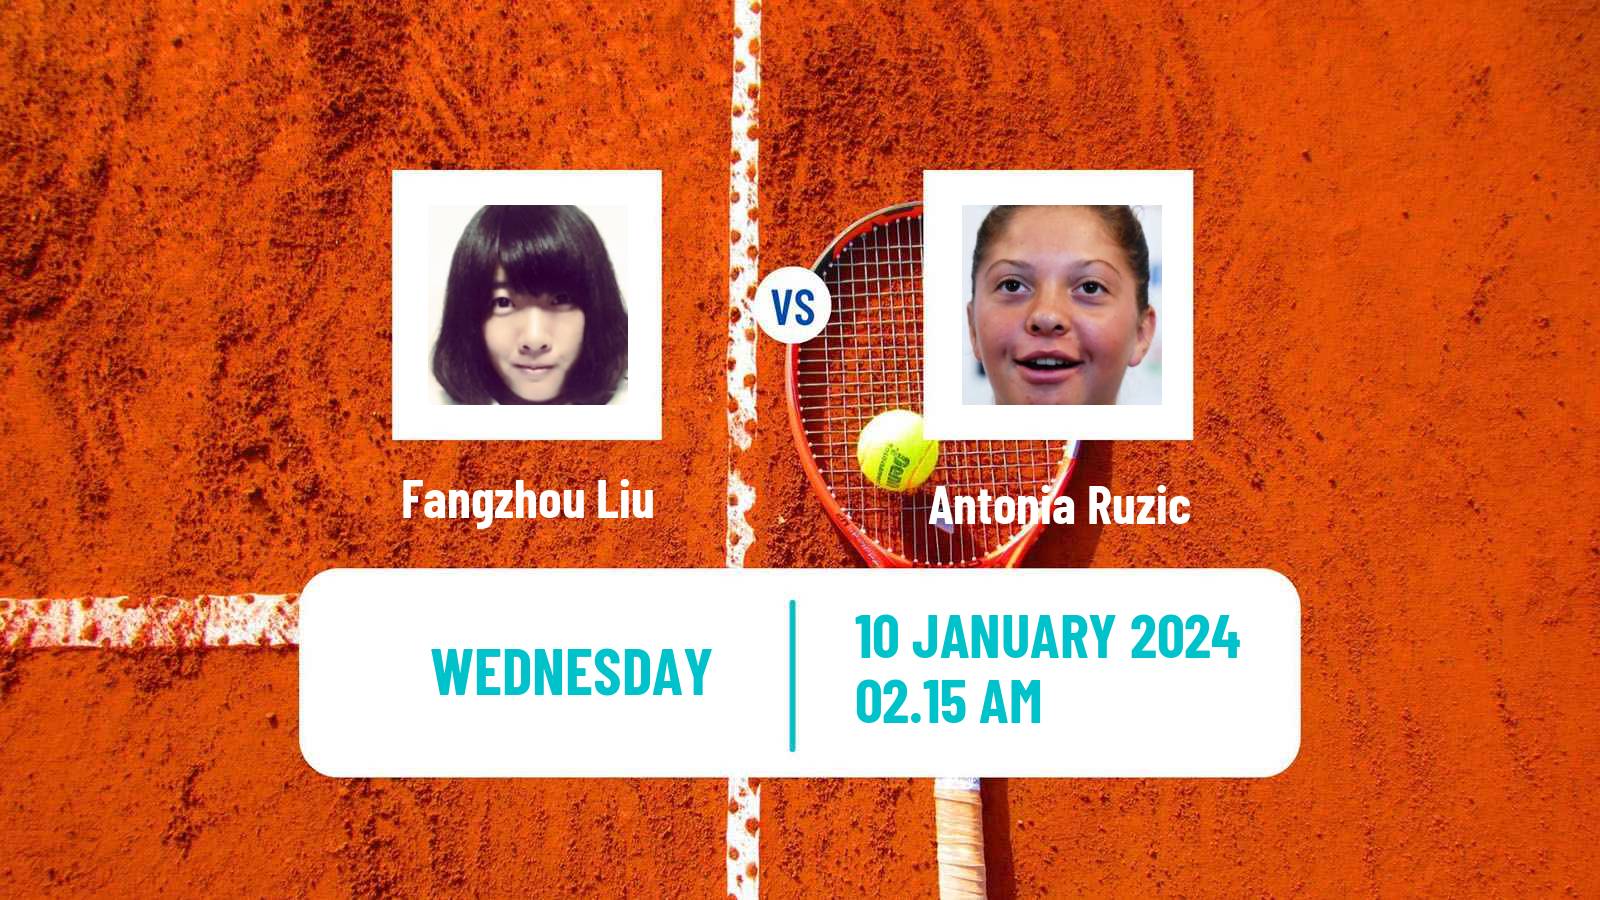 Tennis ITF W50 Nonthaburi 2 Women Fangzhou Liu - Antonia Ruzic